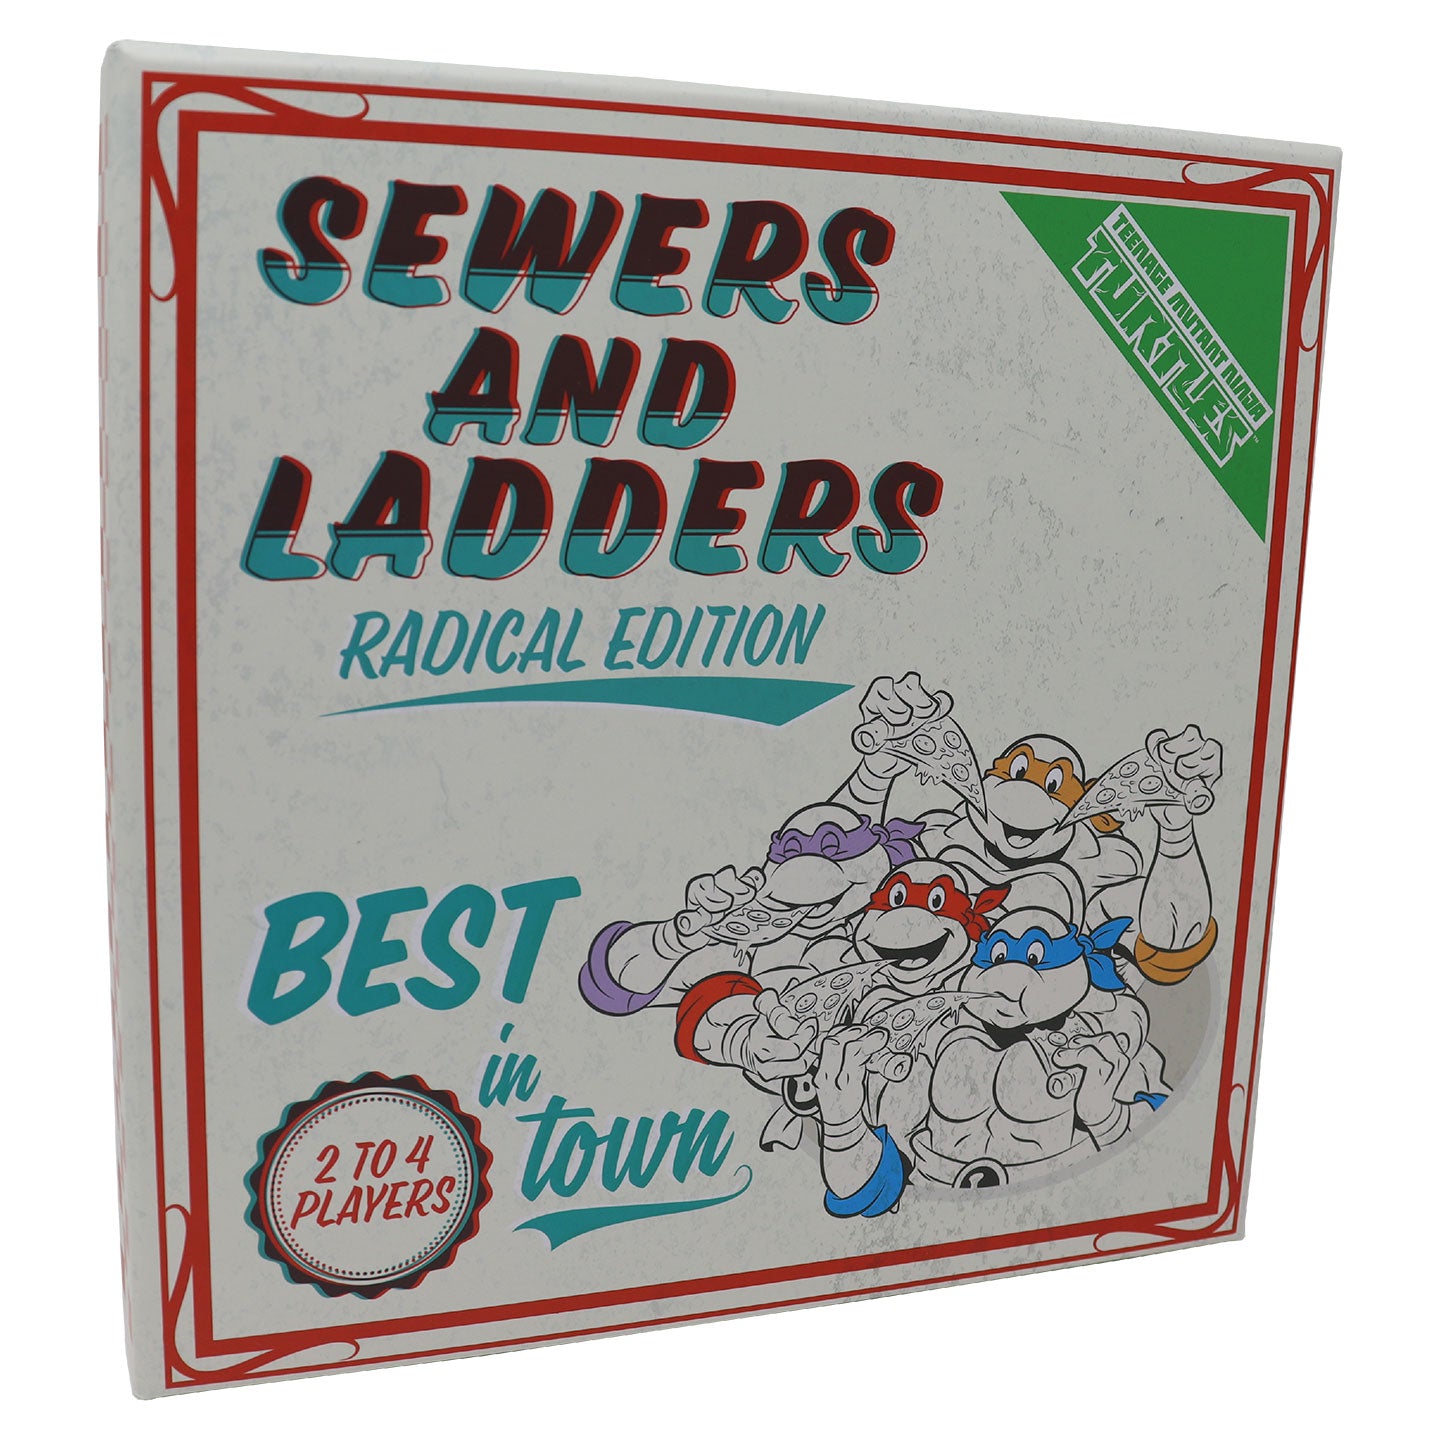 Teenage Mutant Ninja Turtles Sewers & Ladders Board Game